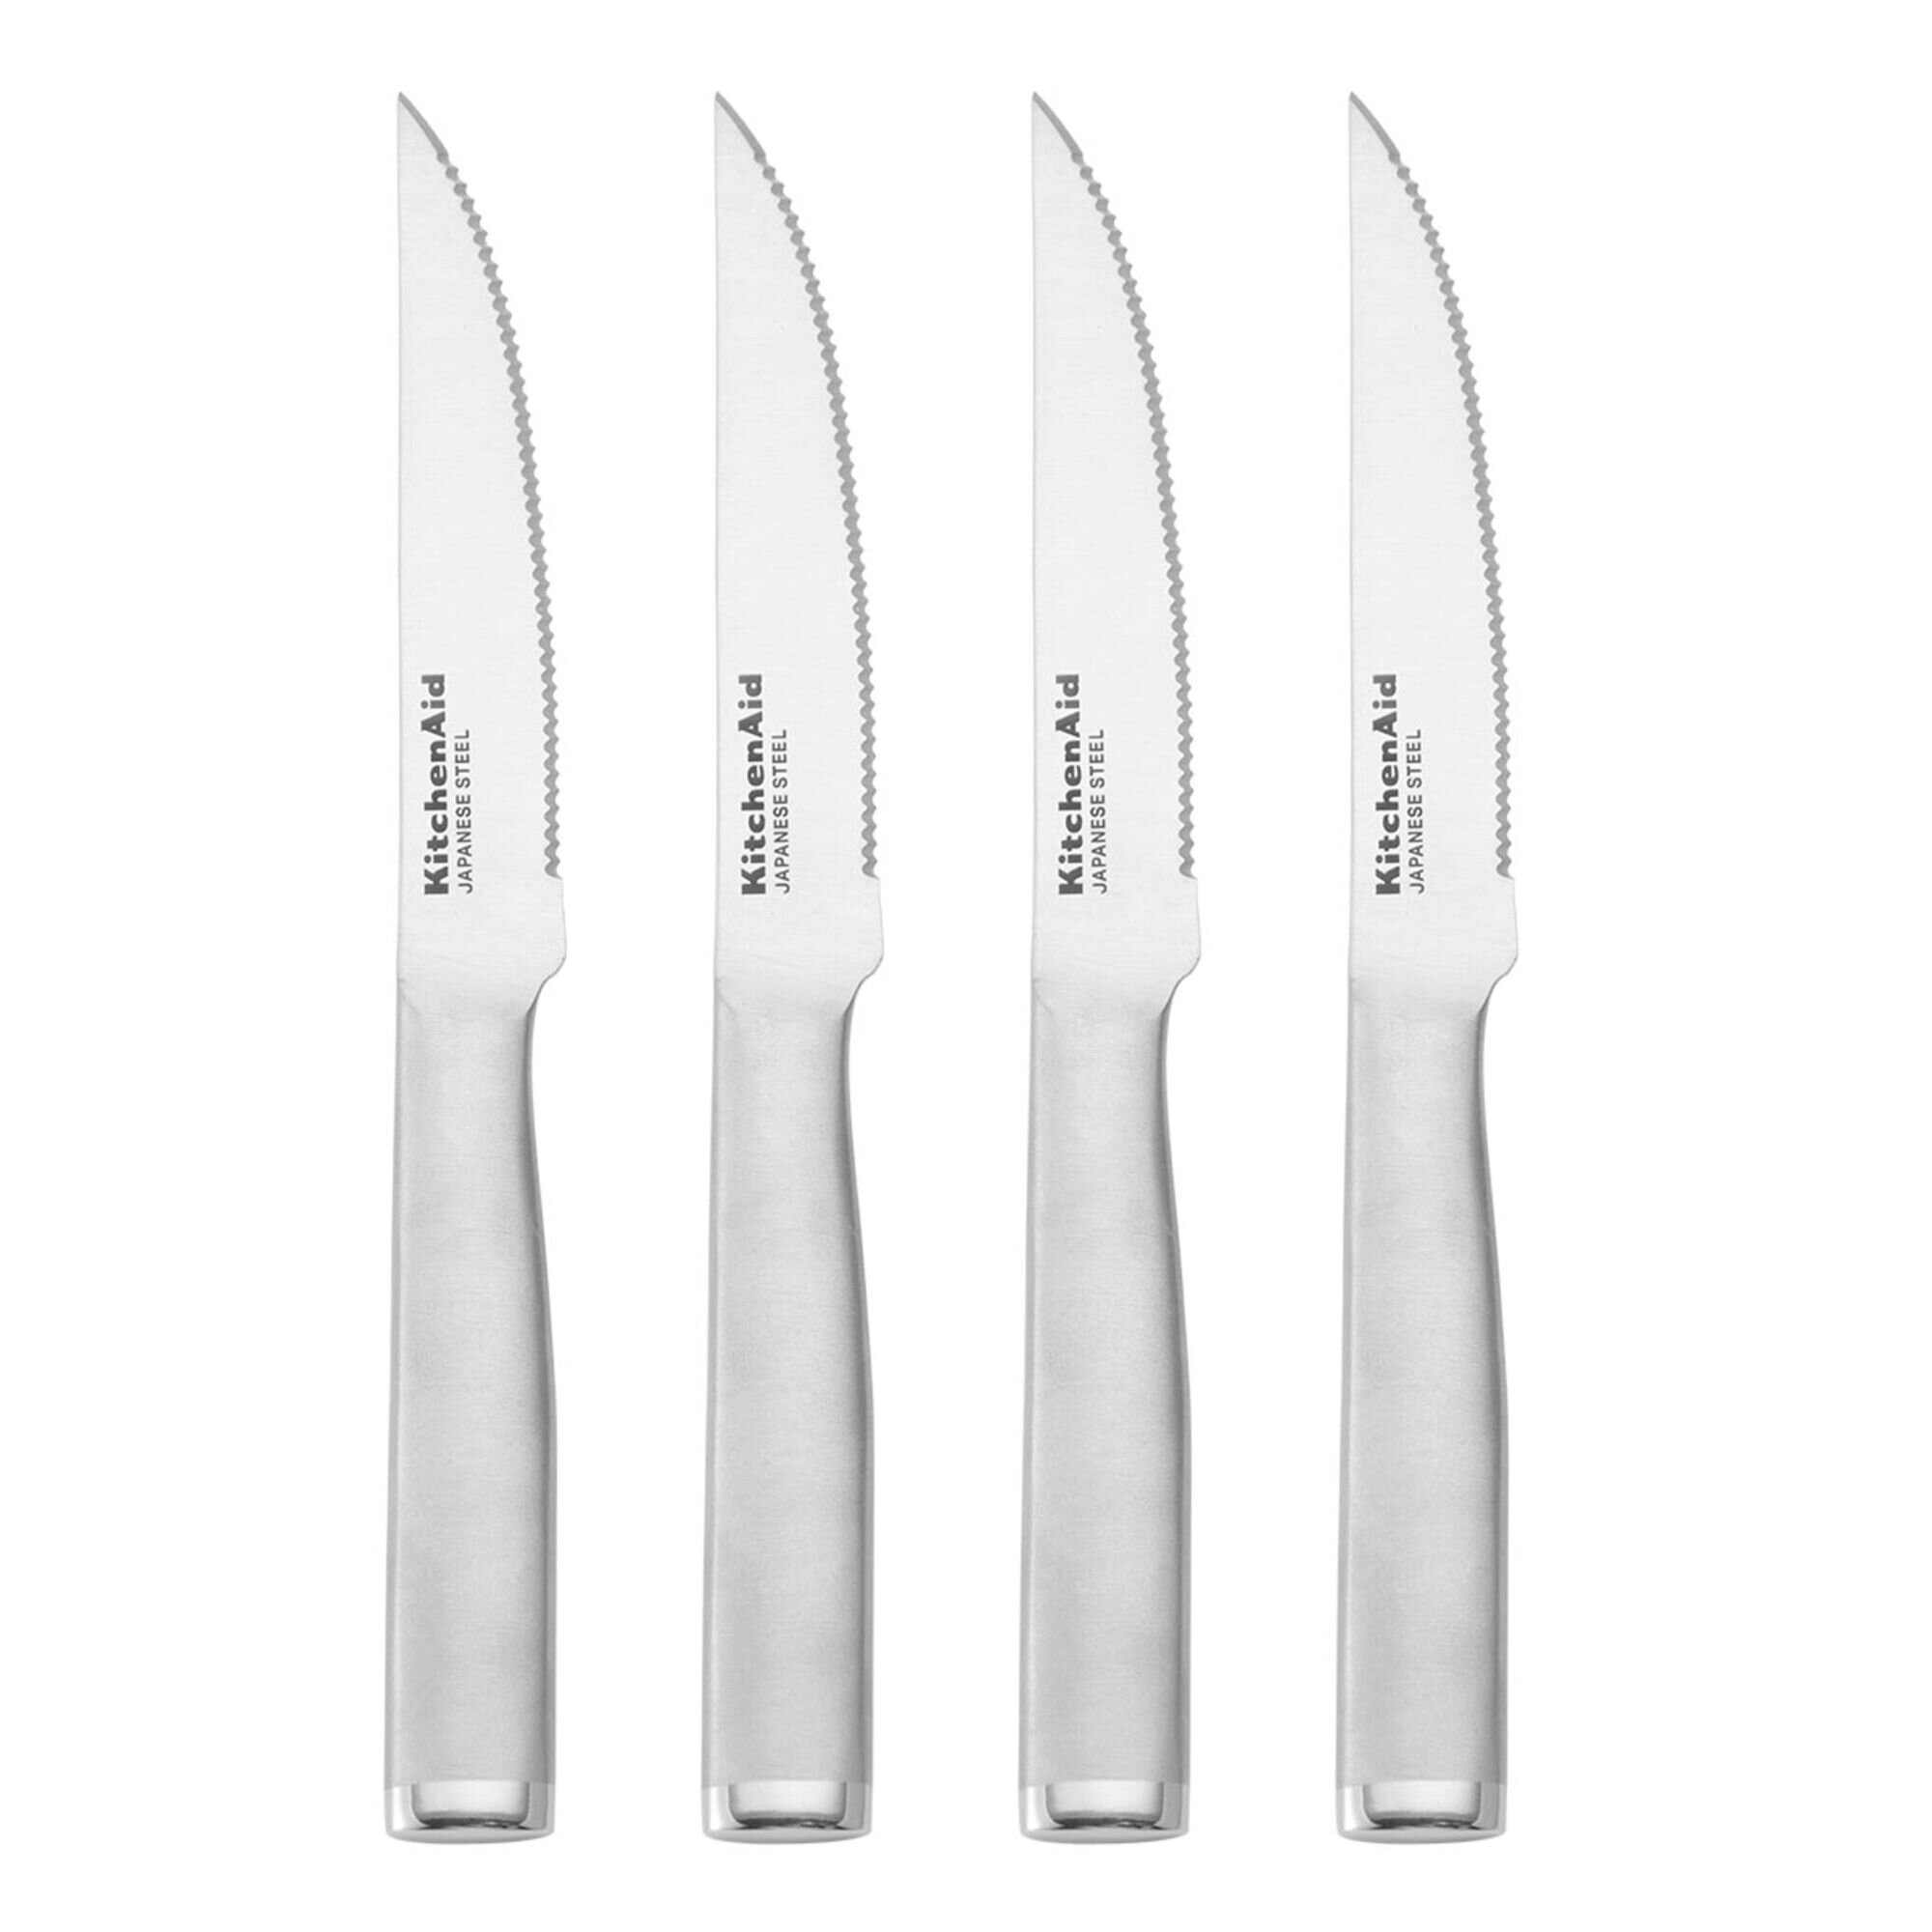 Steak Knives Set of 4,Stainless Steel Serrated Blades, Sharp Knifes, Dinner Knives, Dishwasher Safe, Knives Set for Home or Restaurant, Size: Steak